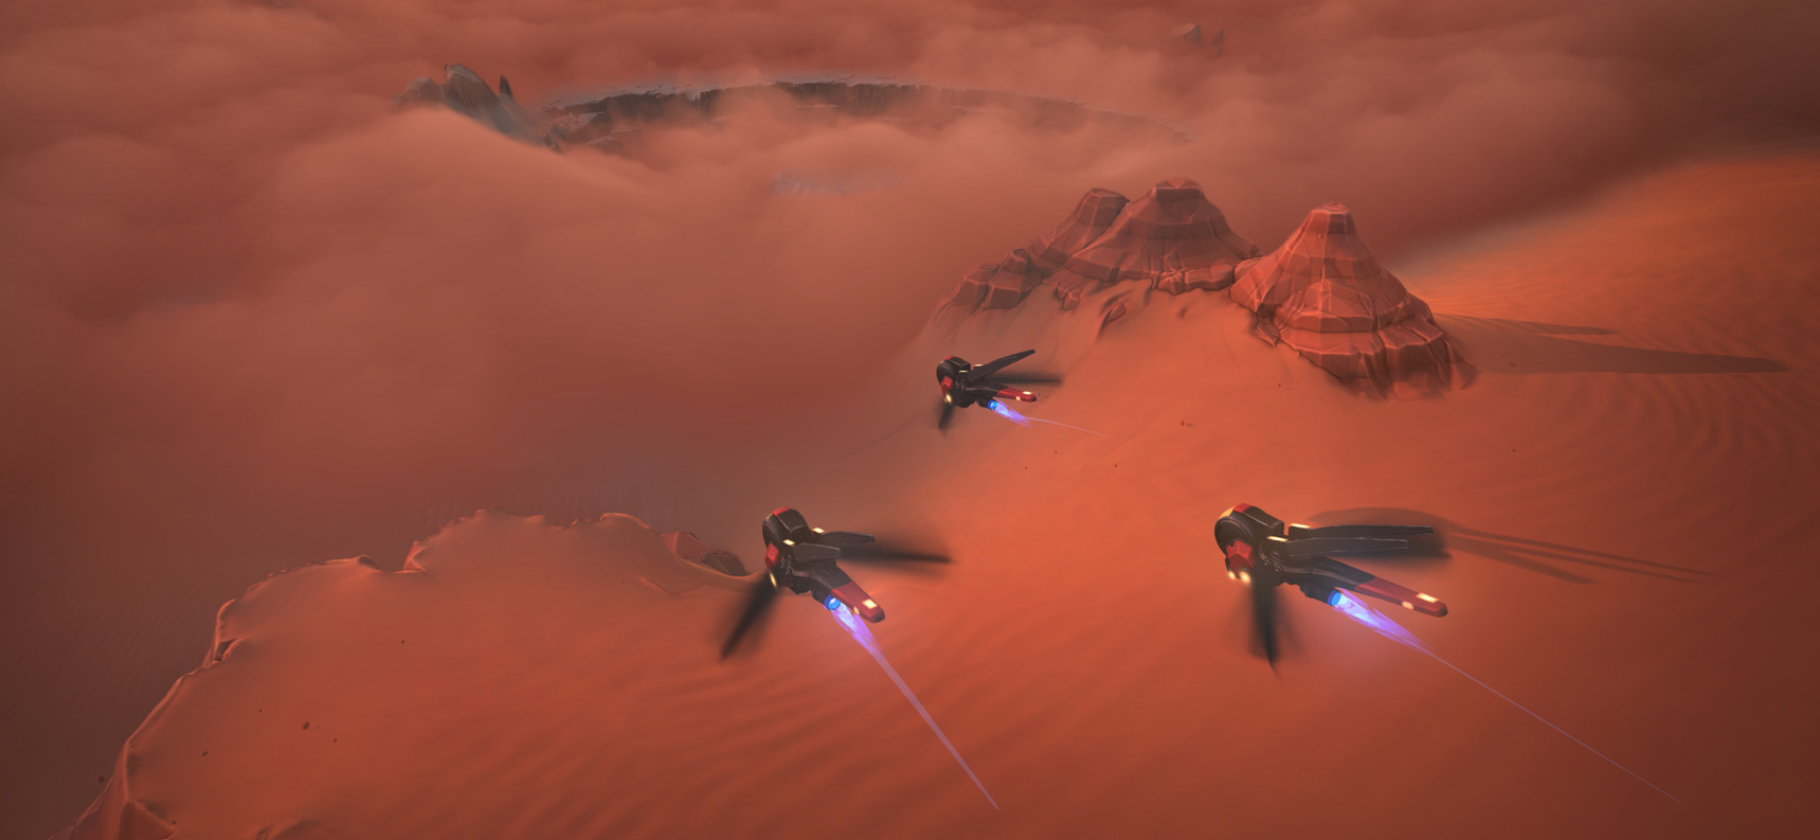 Чем интересна новая стратегия Dune: Spice Wars — и во что еще можно сыграть по «Дюне»